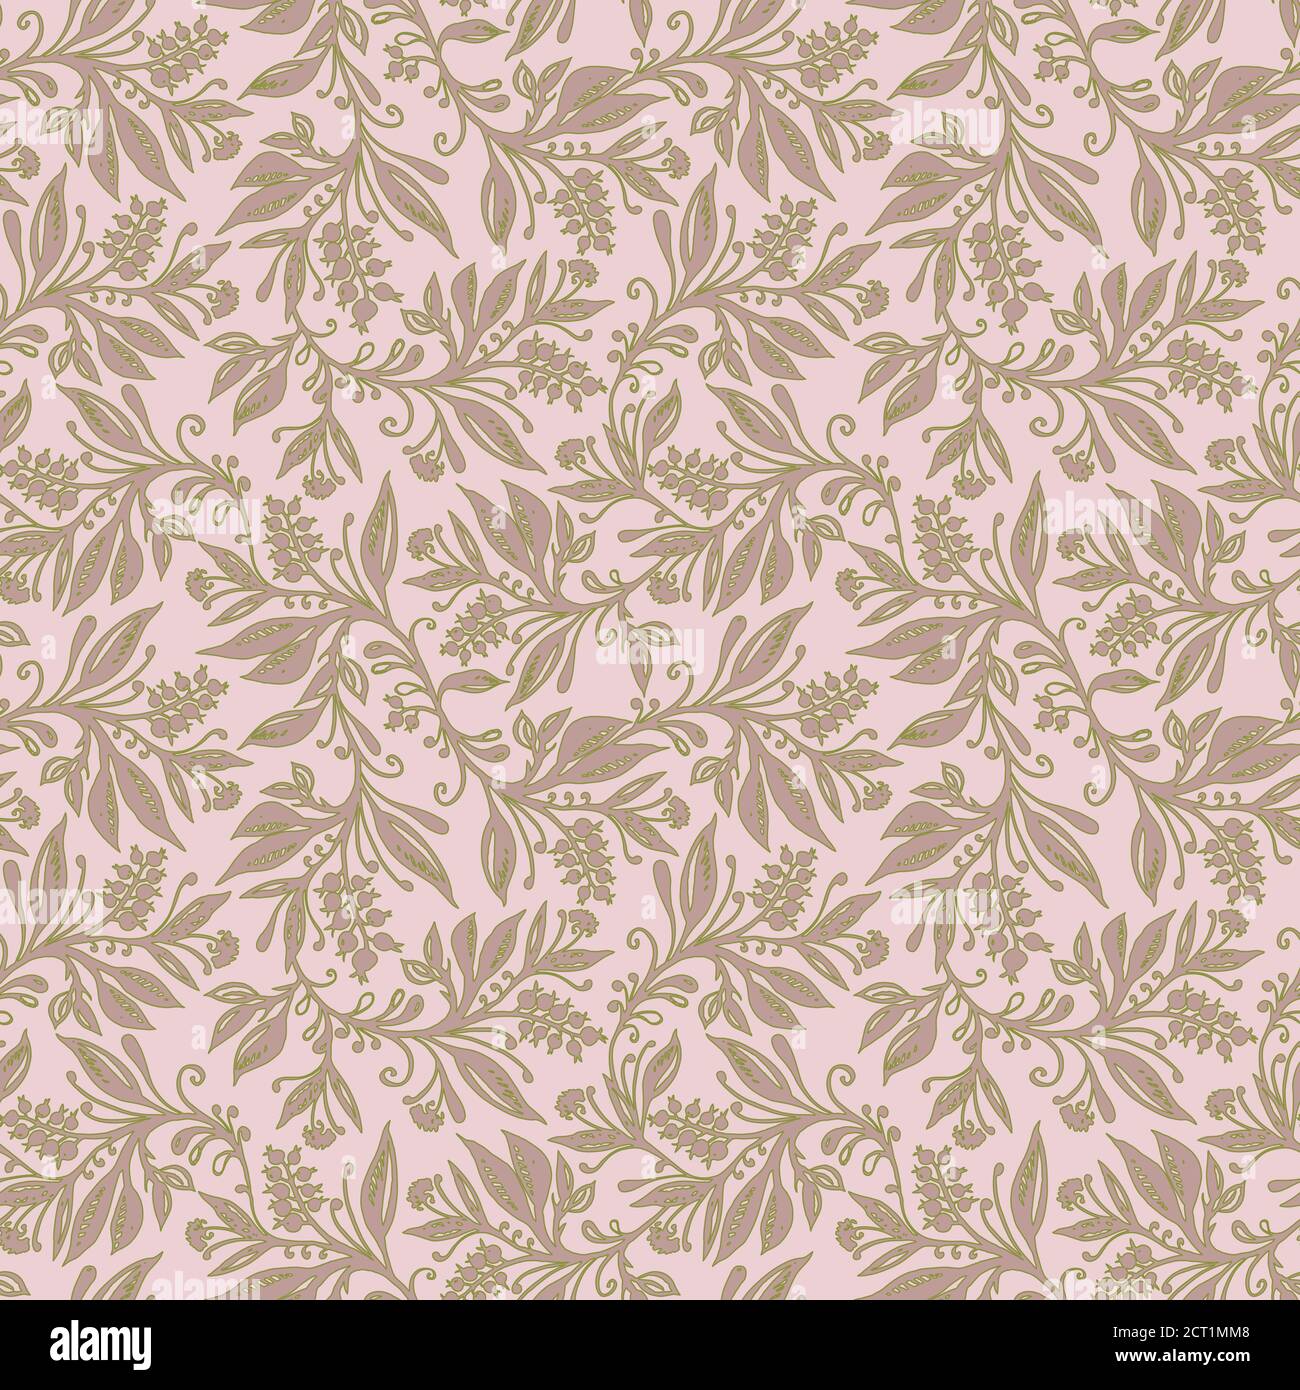 Motif floral sans couture avec feuilles et baies dans la palette rose vert chartreuse, dessiné à la main et numérisé. Design pour papiers peints, textiles, tissus. Illustration de Vecteur